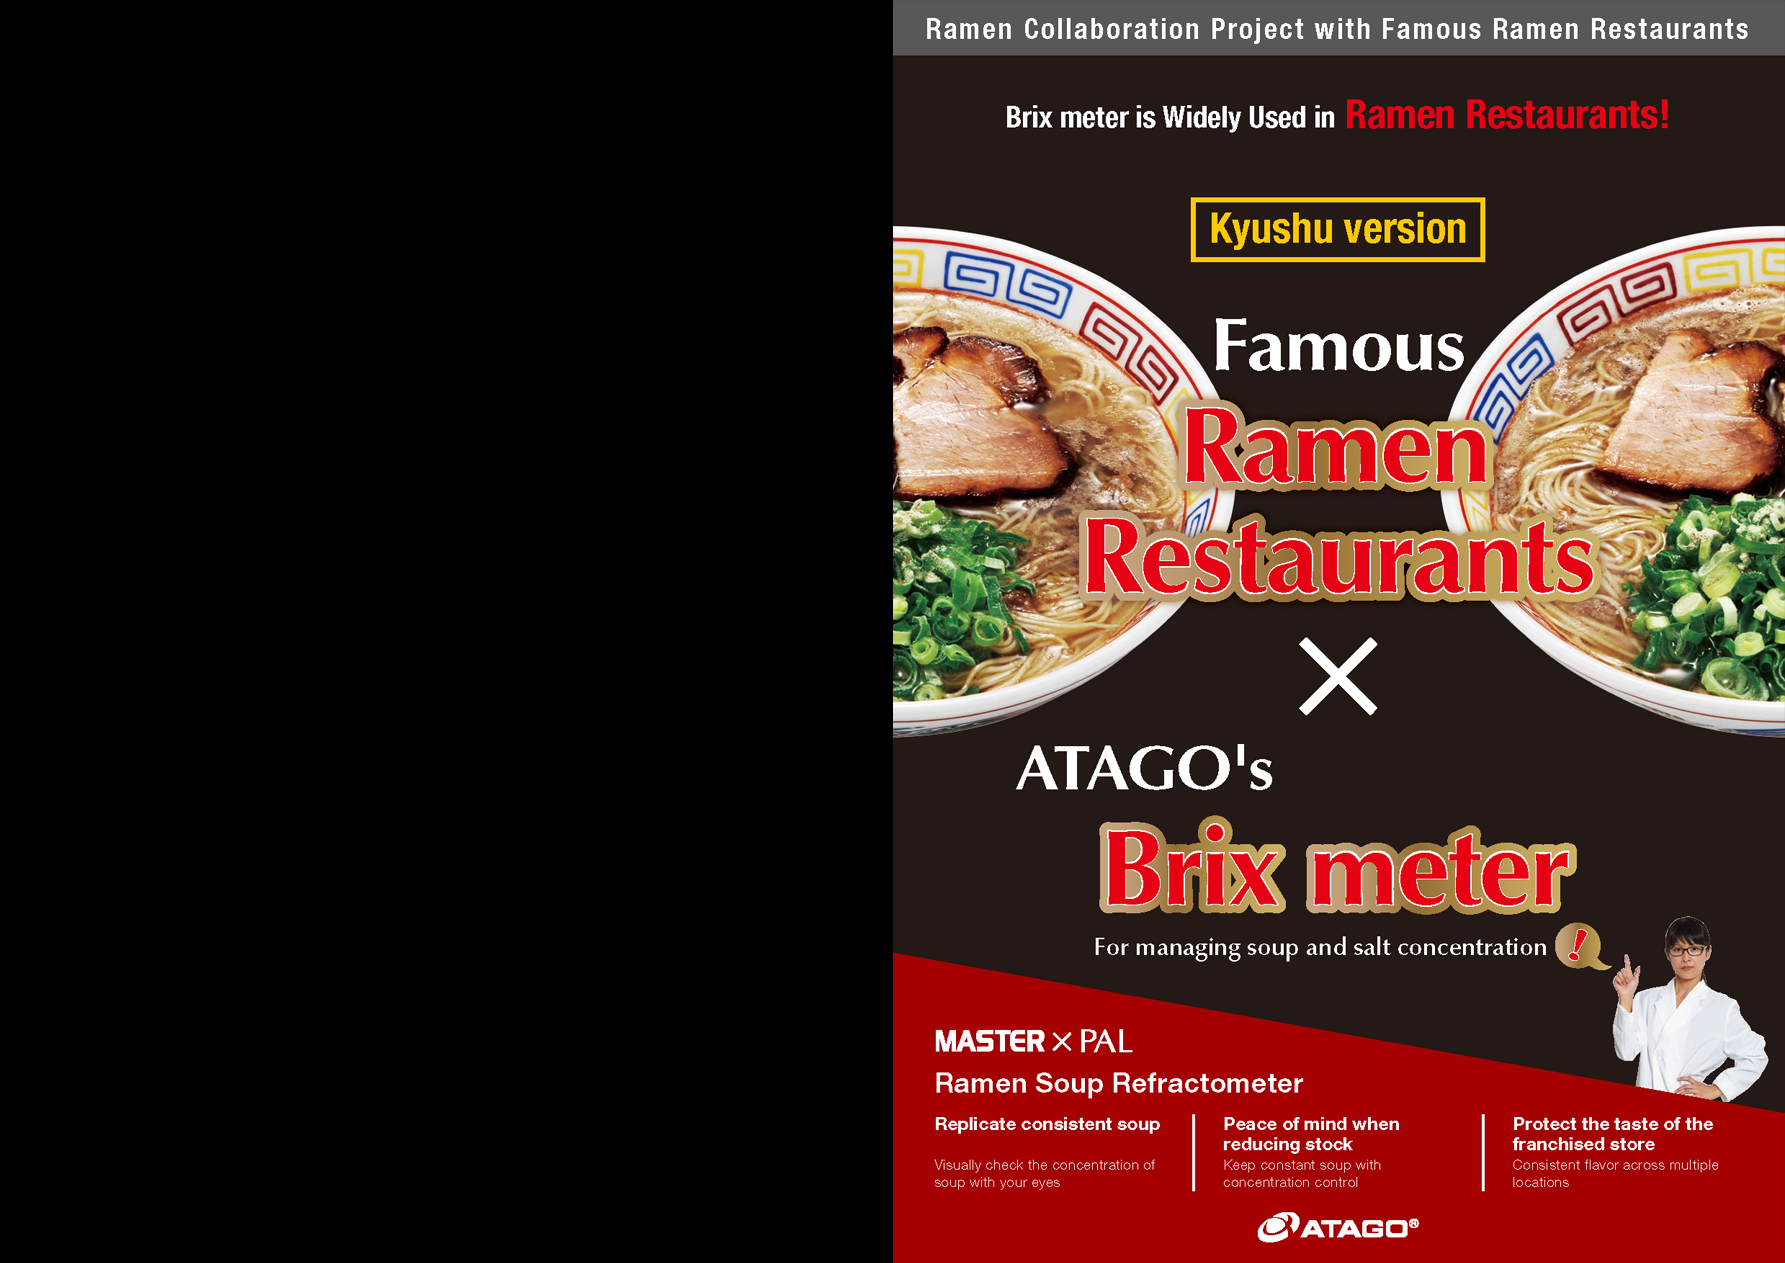 Famous ATAGO's Ramen Restaurants X Brix meter